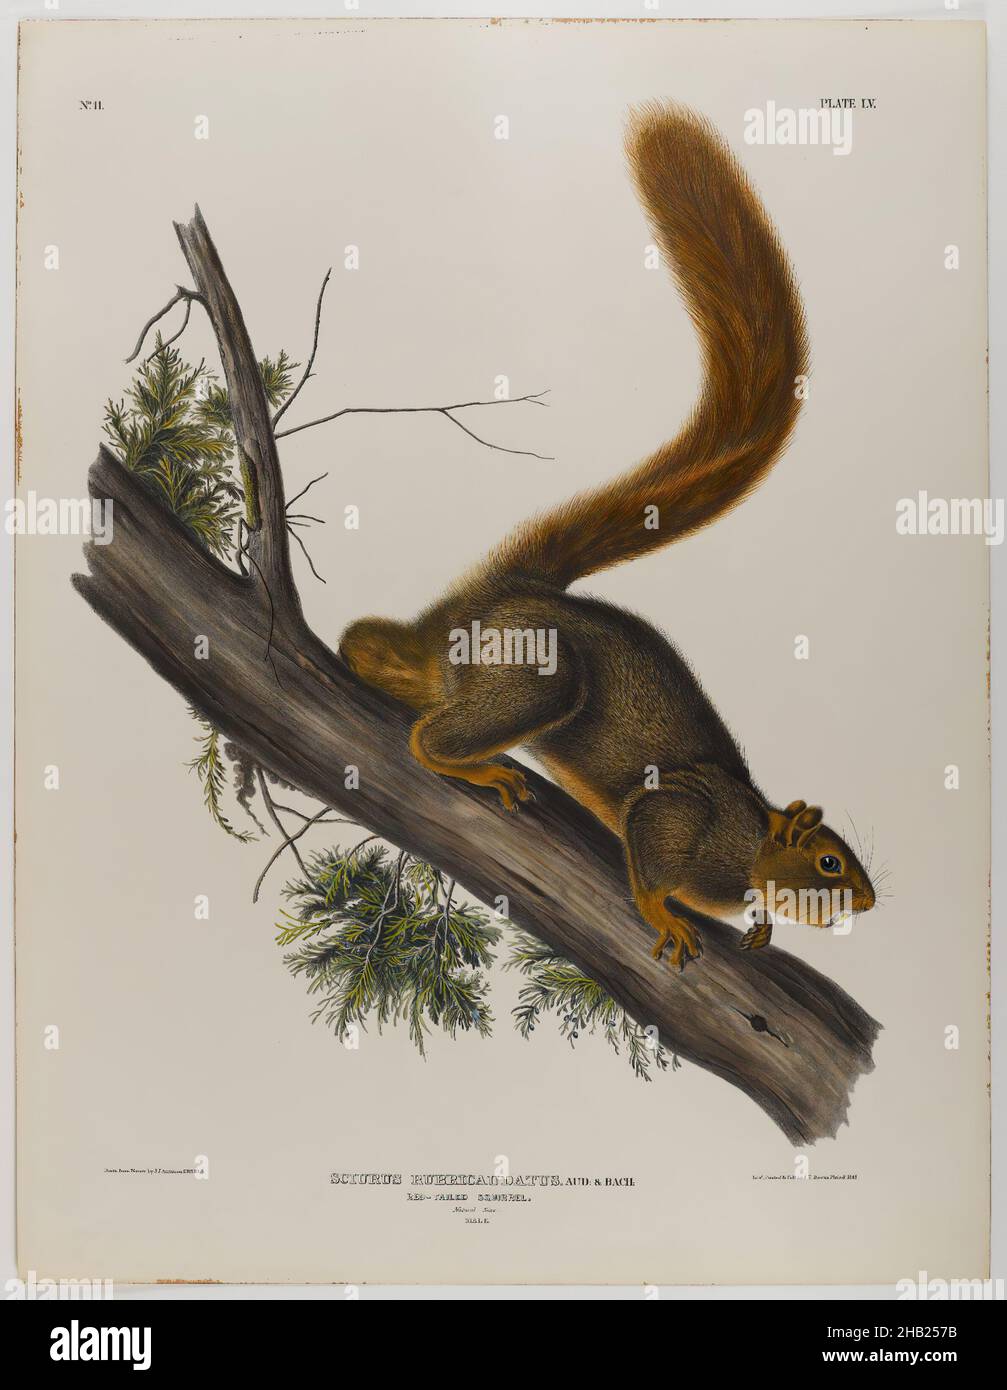 Rat marrone o norvegese, scoiattolo a coda rossa, John James Audubon, americano, nato ad Haiti, 1785-1851, litografia, 27 x 21 pollici, 68,6 x 53,3 cm, fauna, flora, arto, mammiferi, studio della natura, roditore, albero Foto Stock